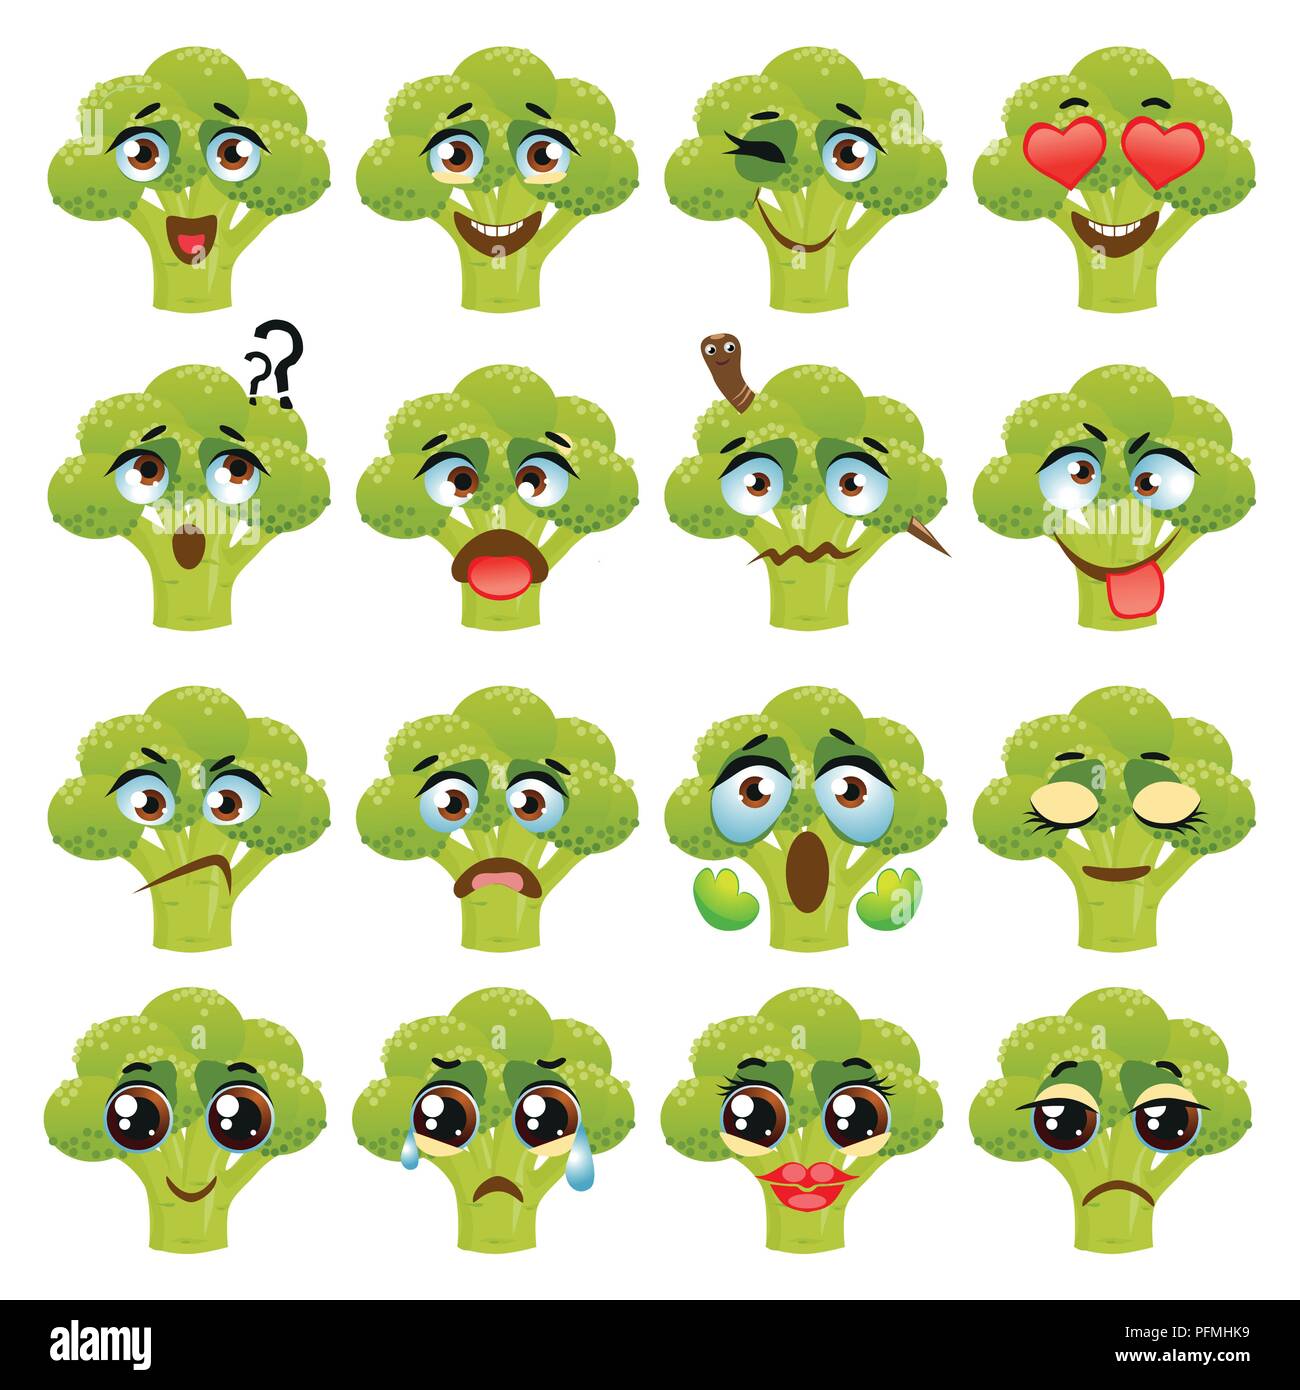 Broccoli Emoji Emoticon Expression. Funny cute food Stock Vector